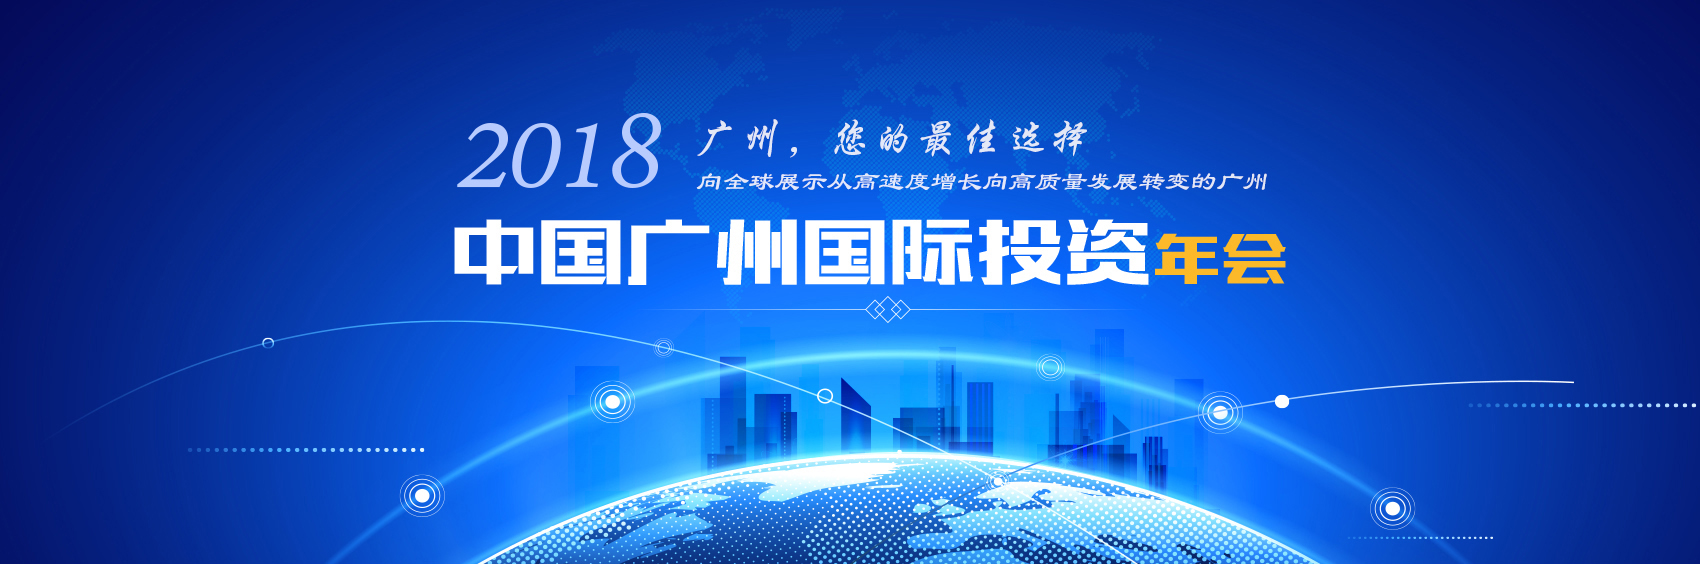 2018中国广州国际投资年会